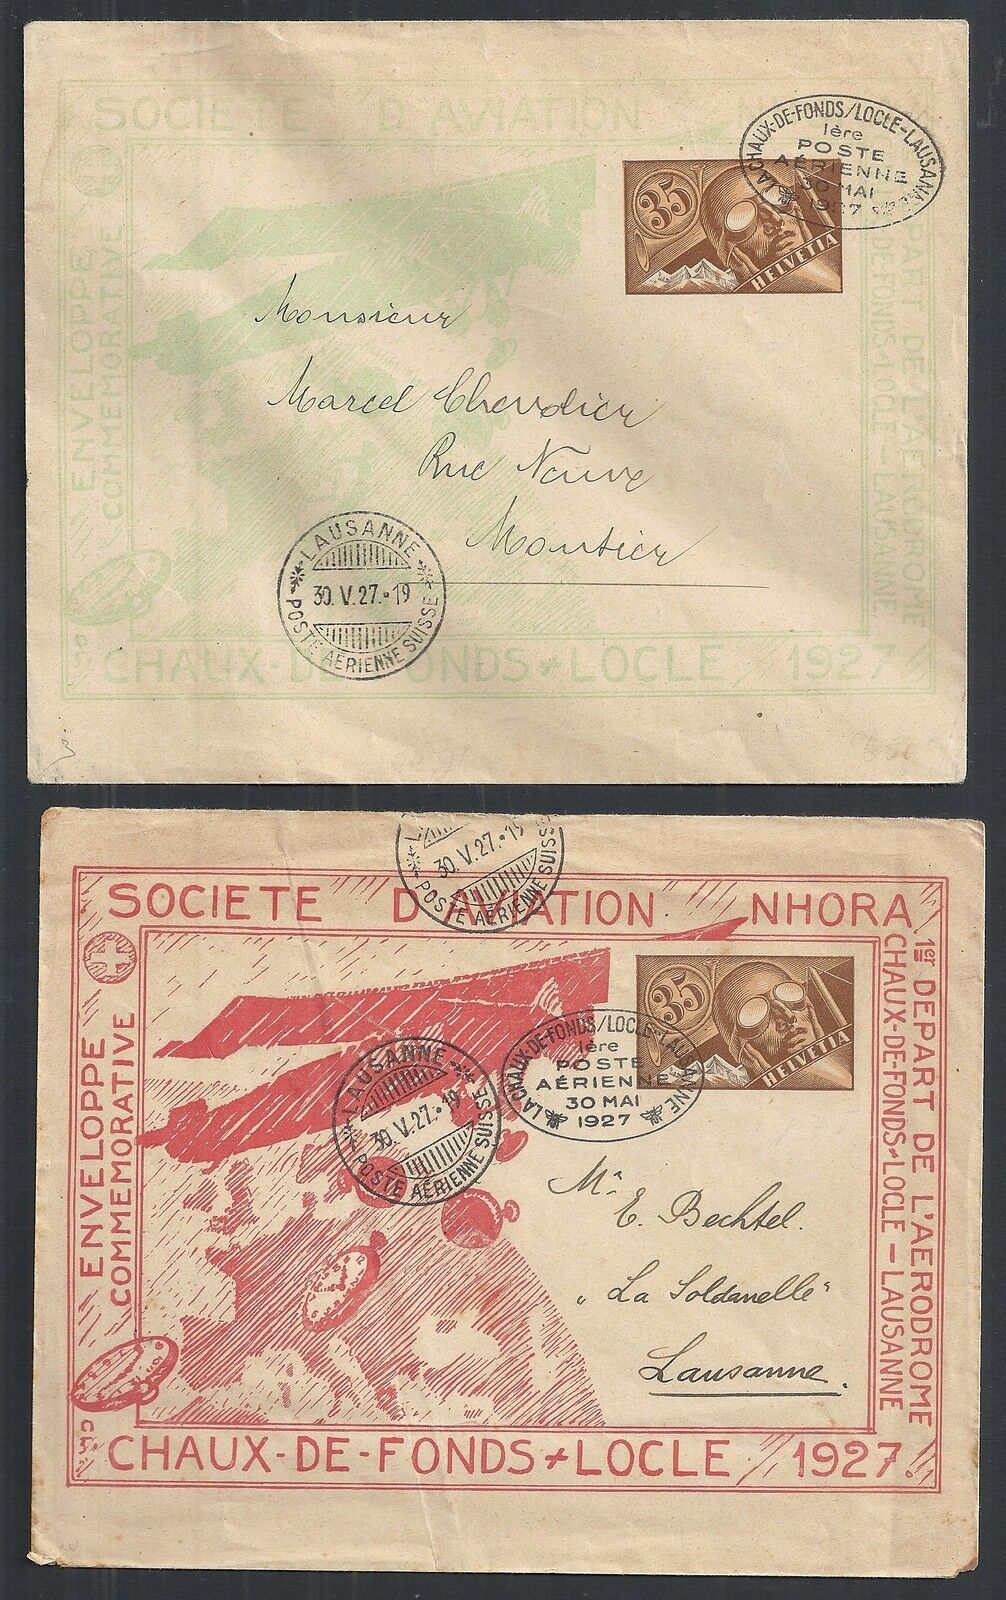 Switzerland Covers 1927 1st Flightcovers Chaux-de-fonds-loccle Special Cancels